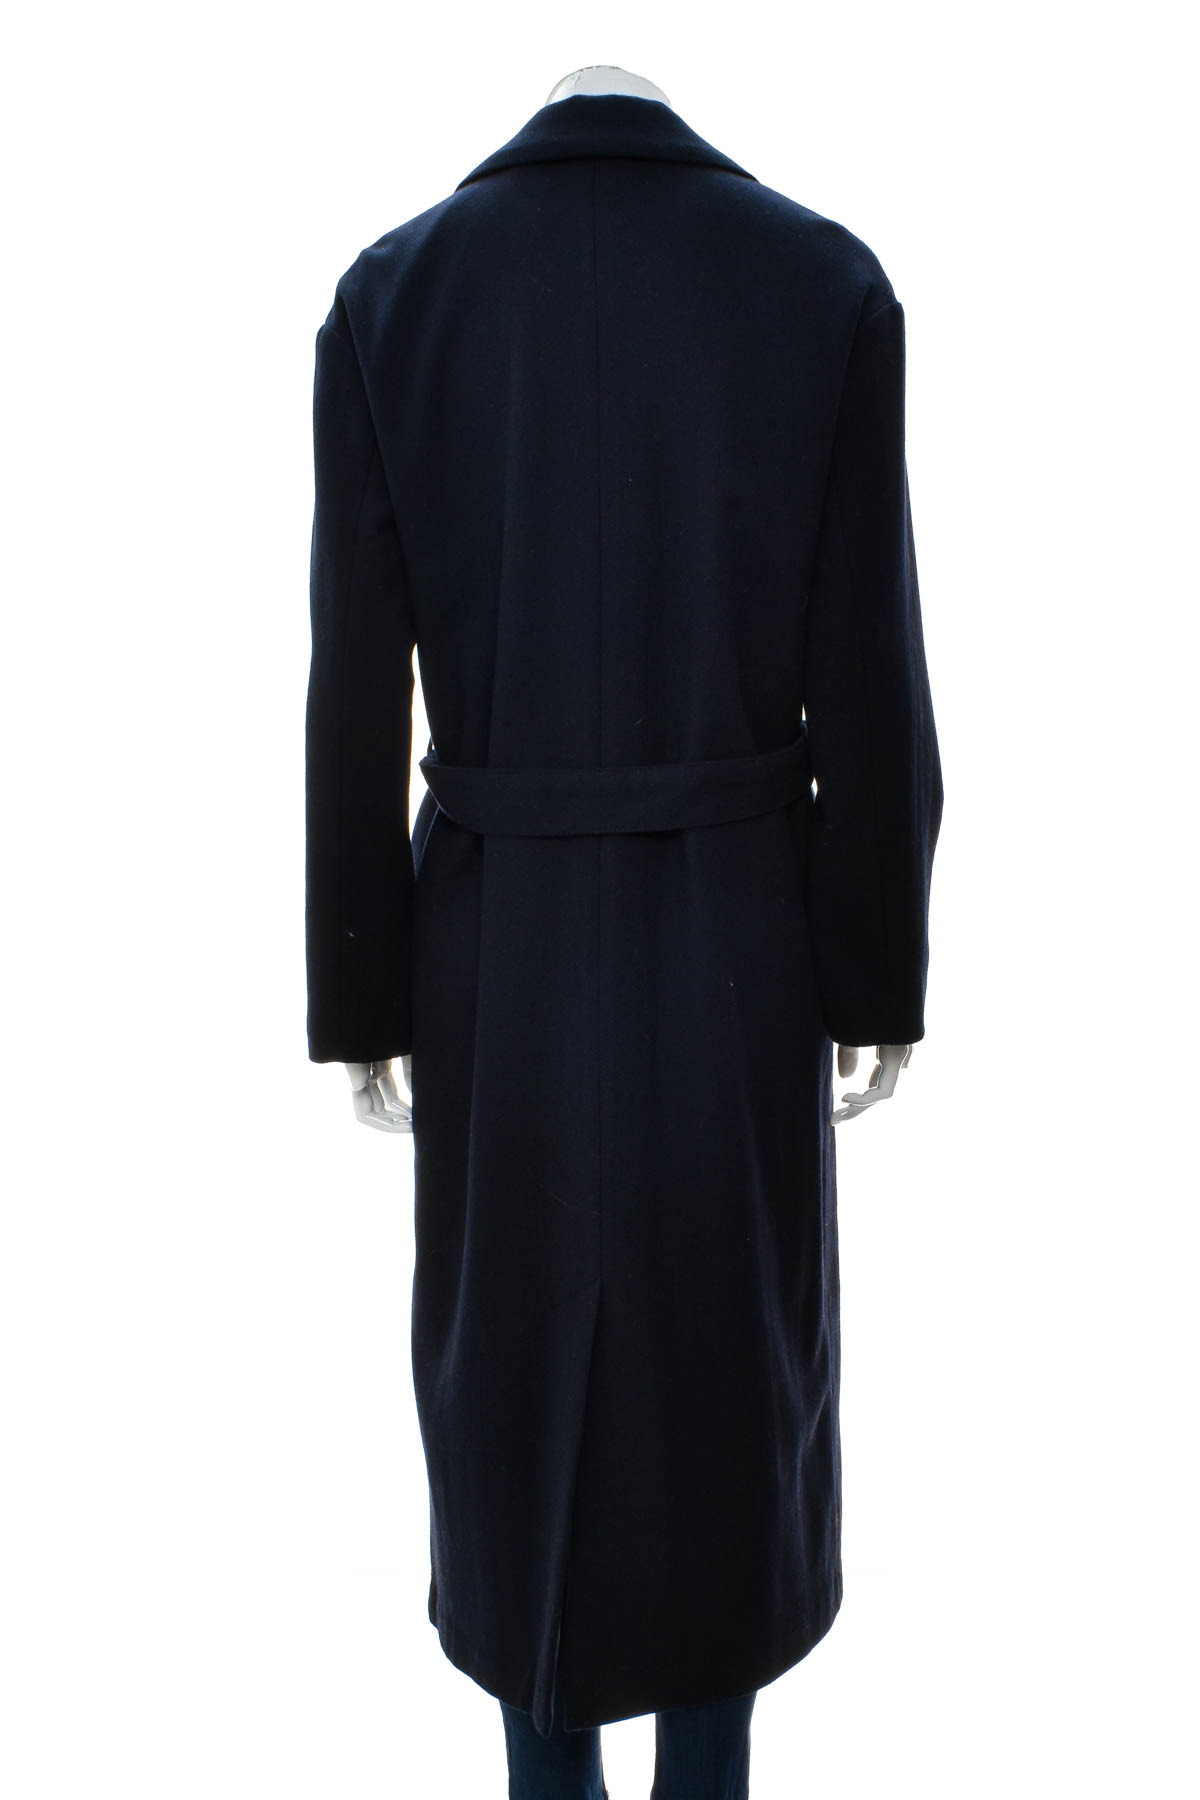 Γυναικείο παλτό - Levi Strauss & Co. - 1